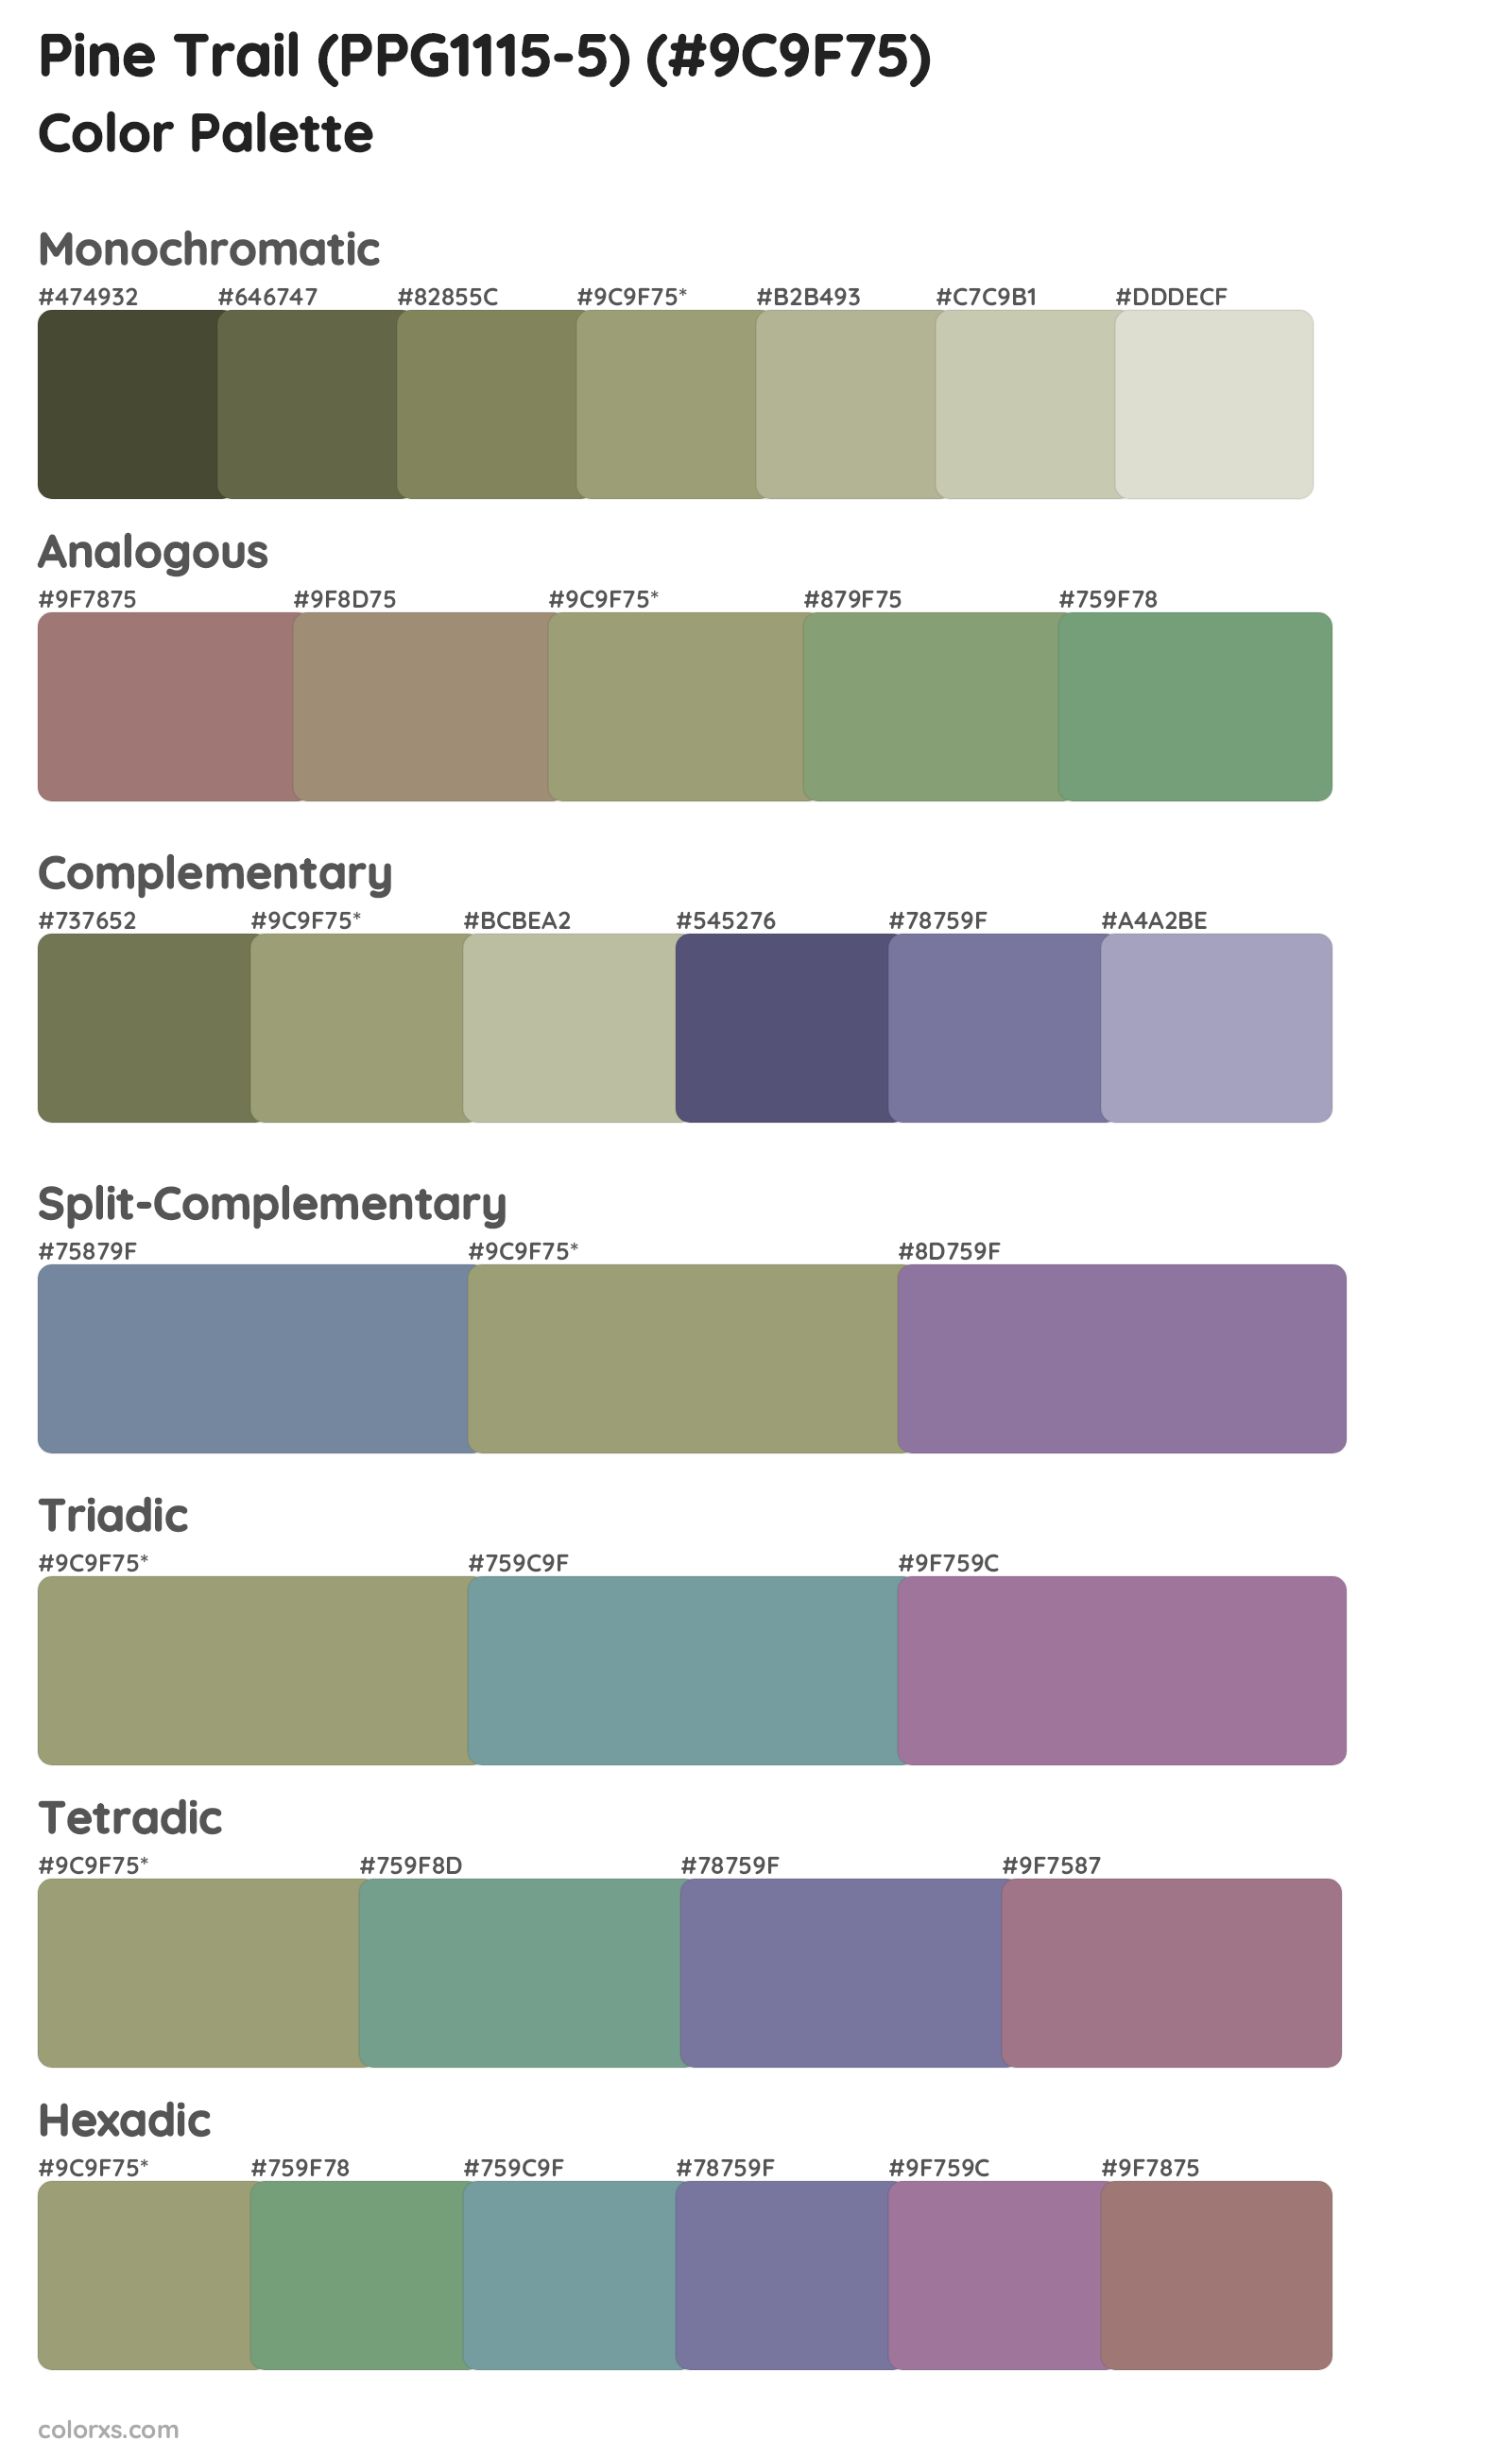 Pine Trail (PPG1115-5) Color Scheme Palettes